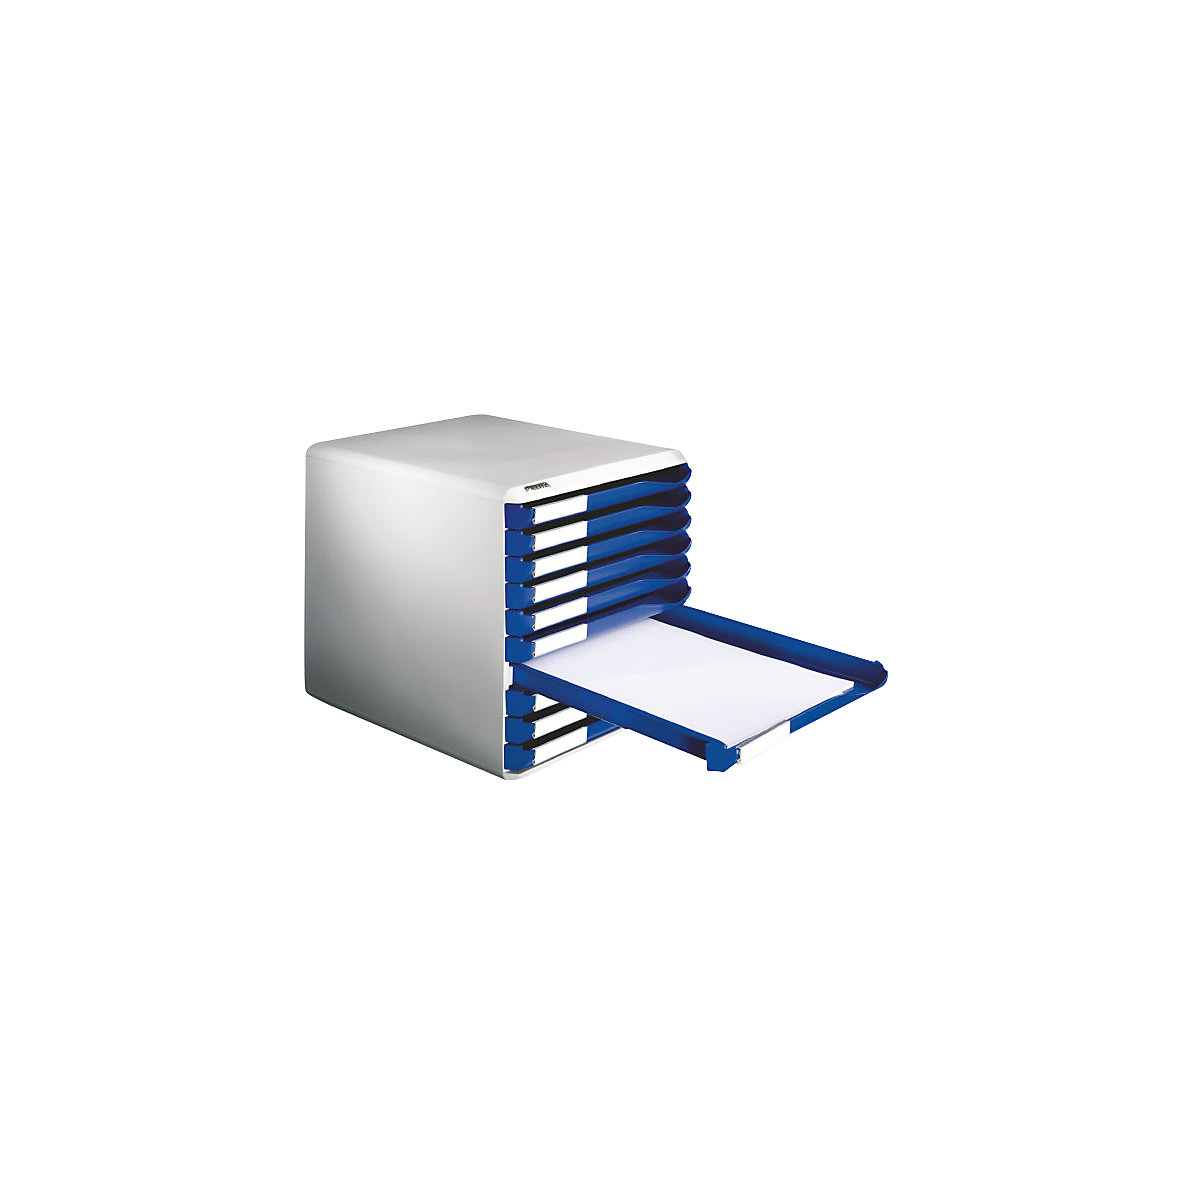 Pojemnik – Leitz, zestaw pojemników na pocztę i formularze, kolor obudowy: szary, kolor szuflad: niebieski, 10 szuflad